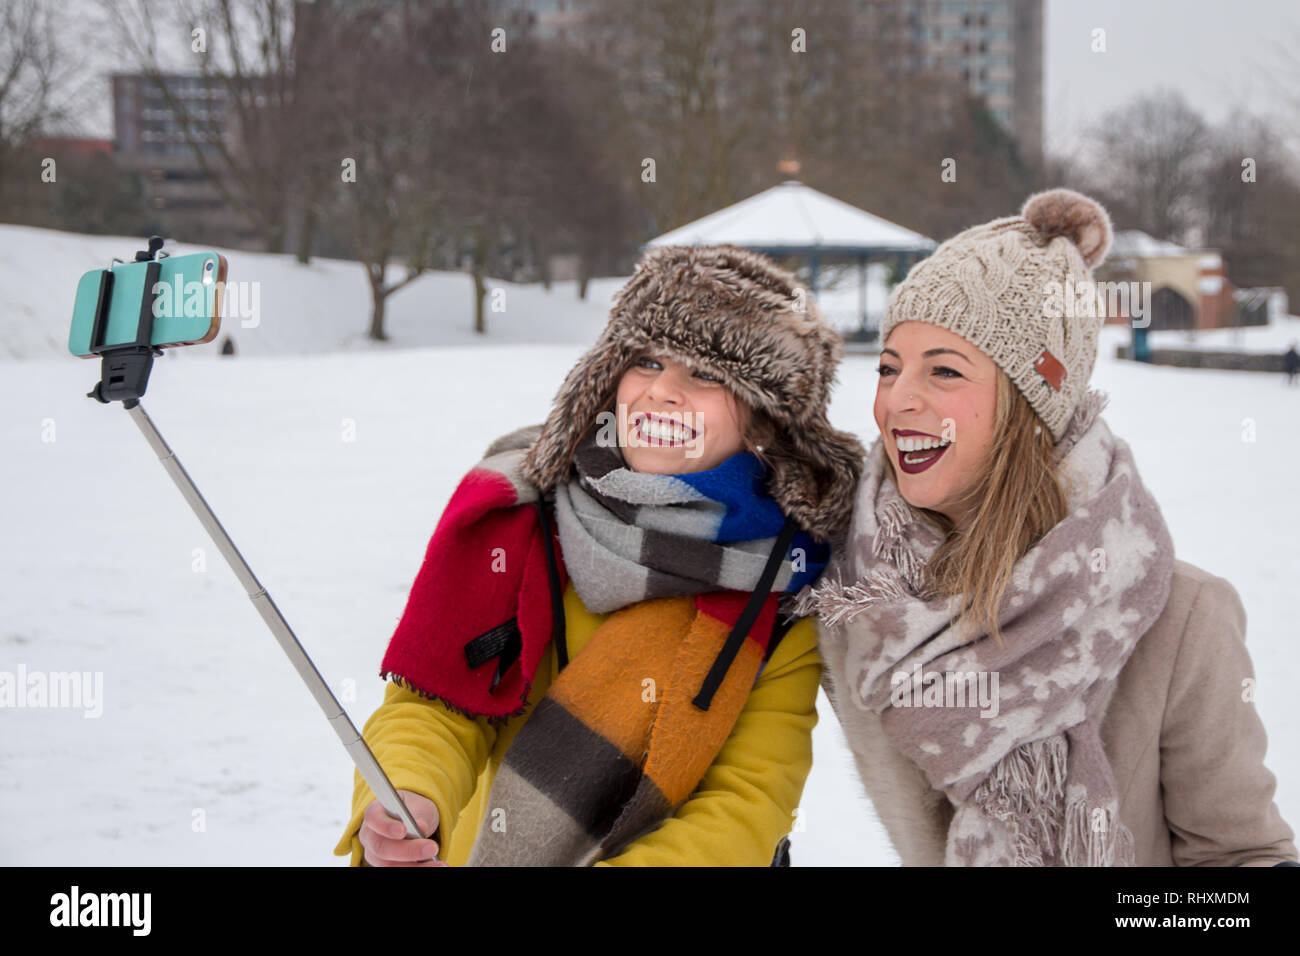 Two women taking a 'snow selfie' in Castle Park, Bristol, UK Stock Photo